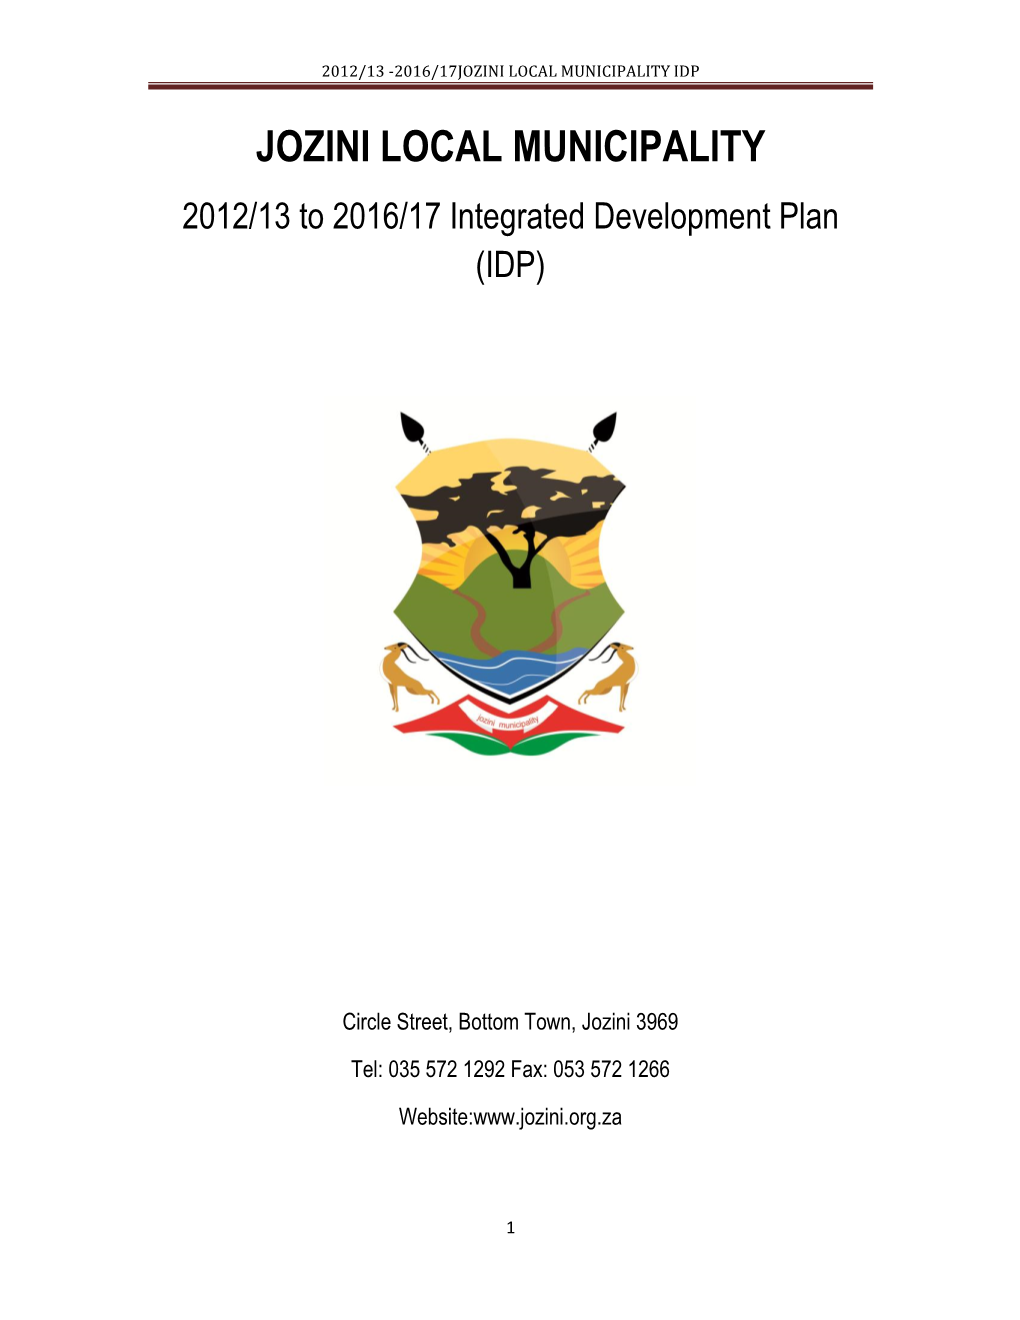 Jozini Local Municipality Draft Idp 2012/13